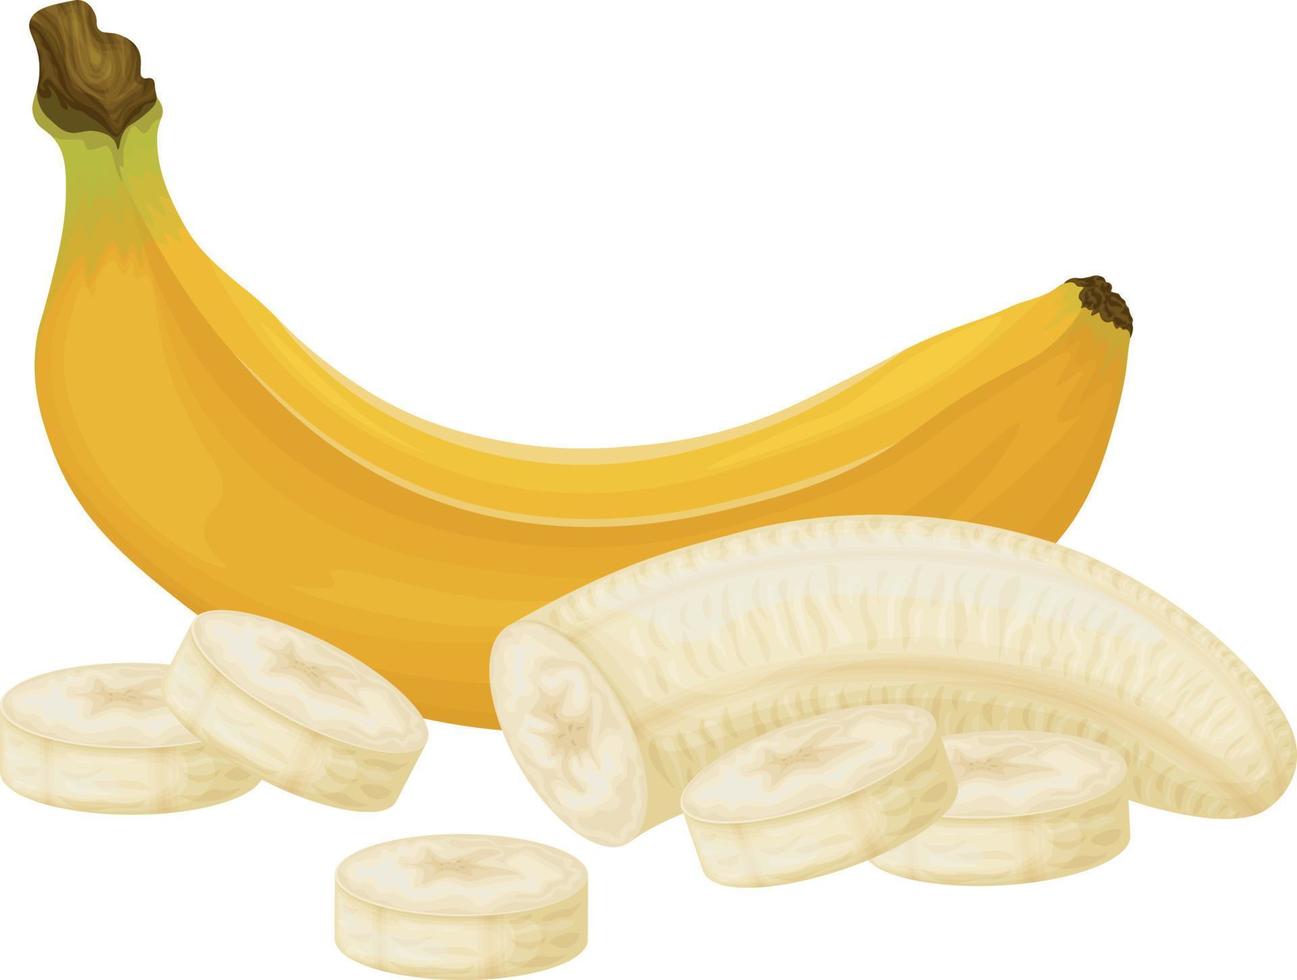 Bananen. Bild von Bananen. Bananen geschält und in Stücke geschnitten. Tropische Frucht. Vegetarisches Produkt. Vektor